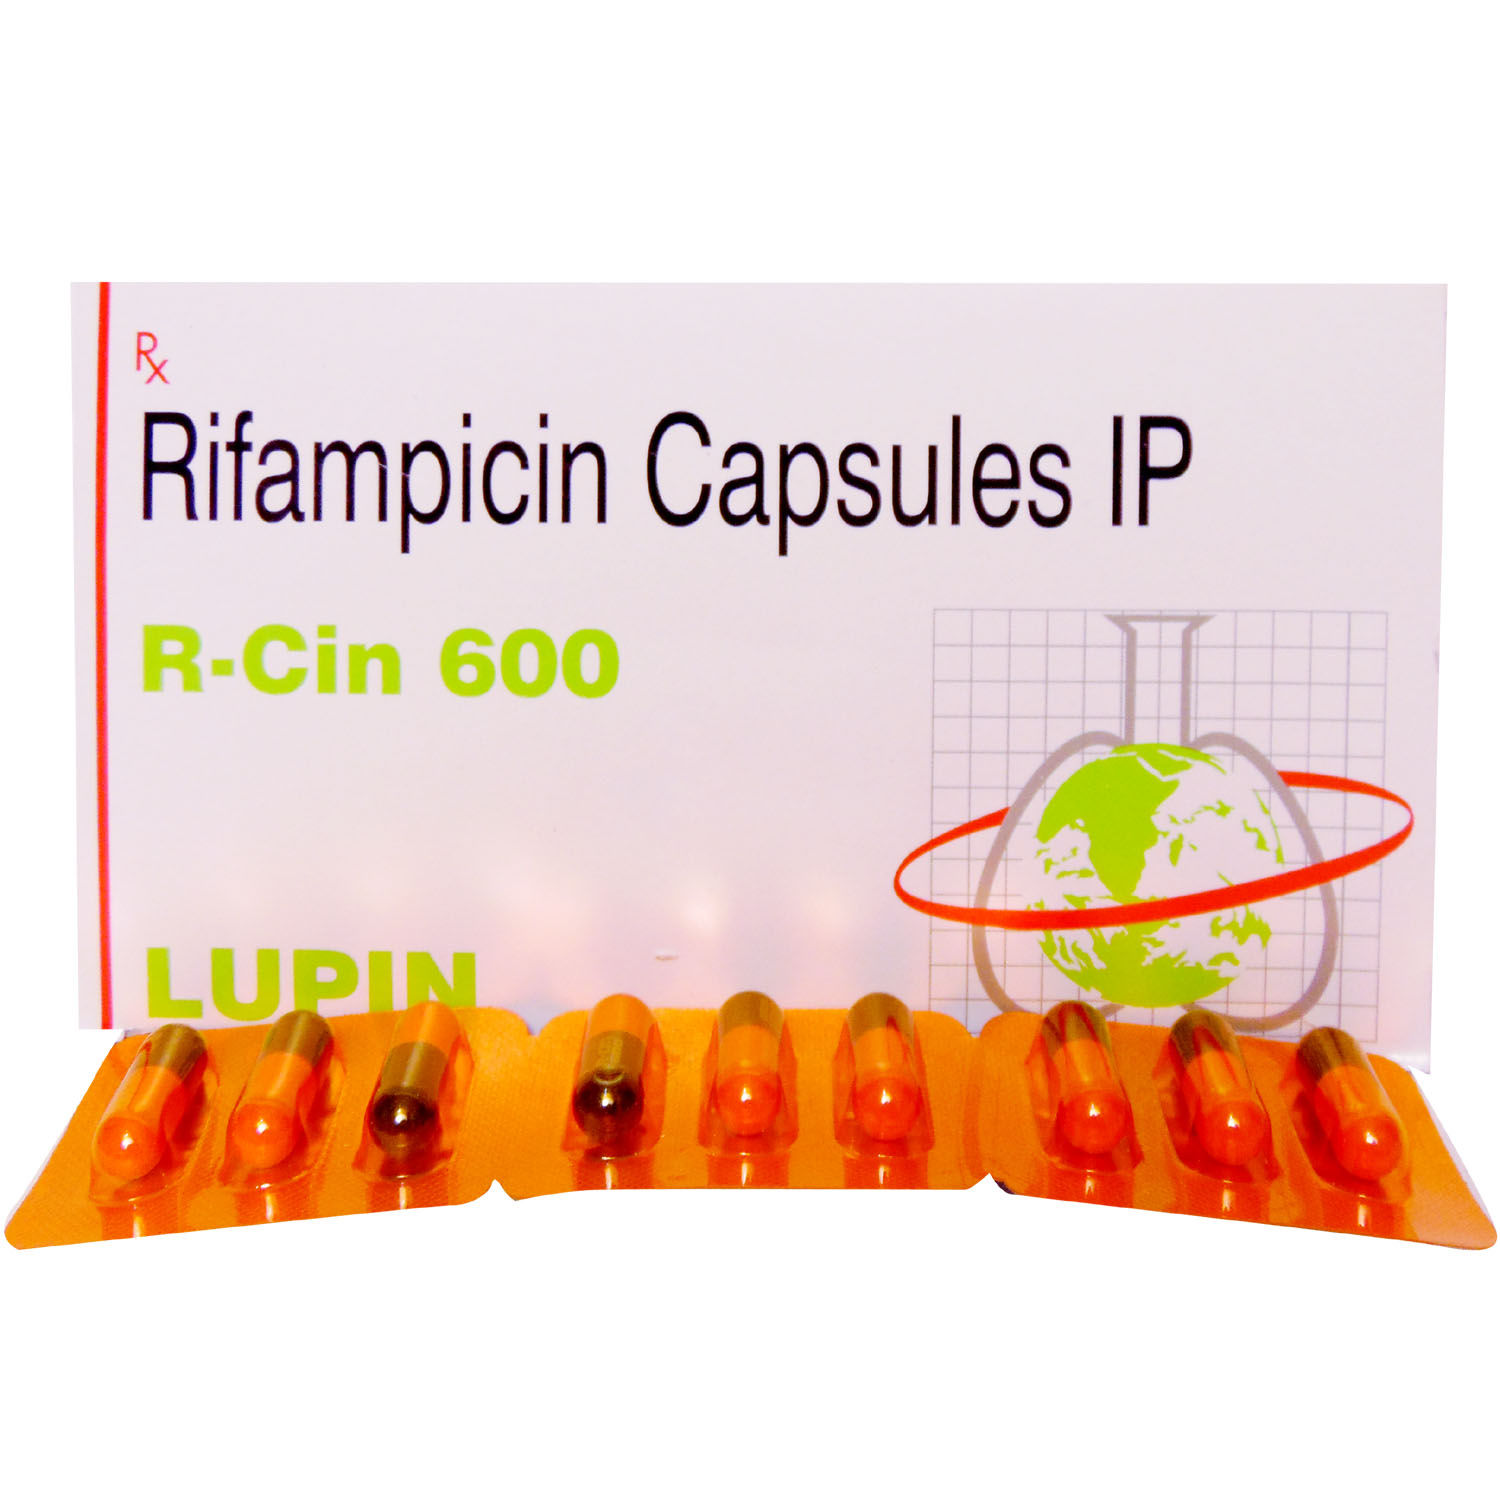 Buy R Cin 600 Capsule 3's Online